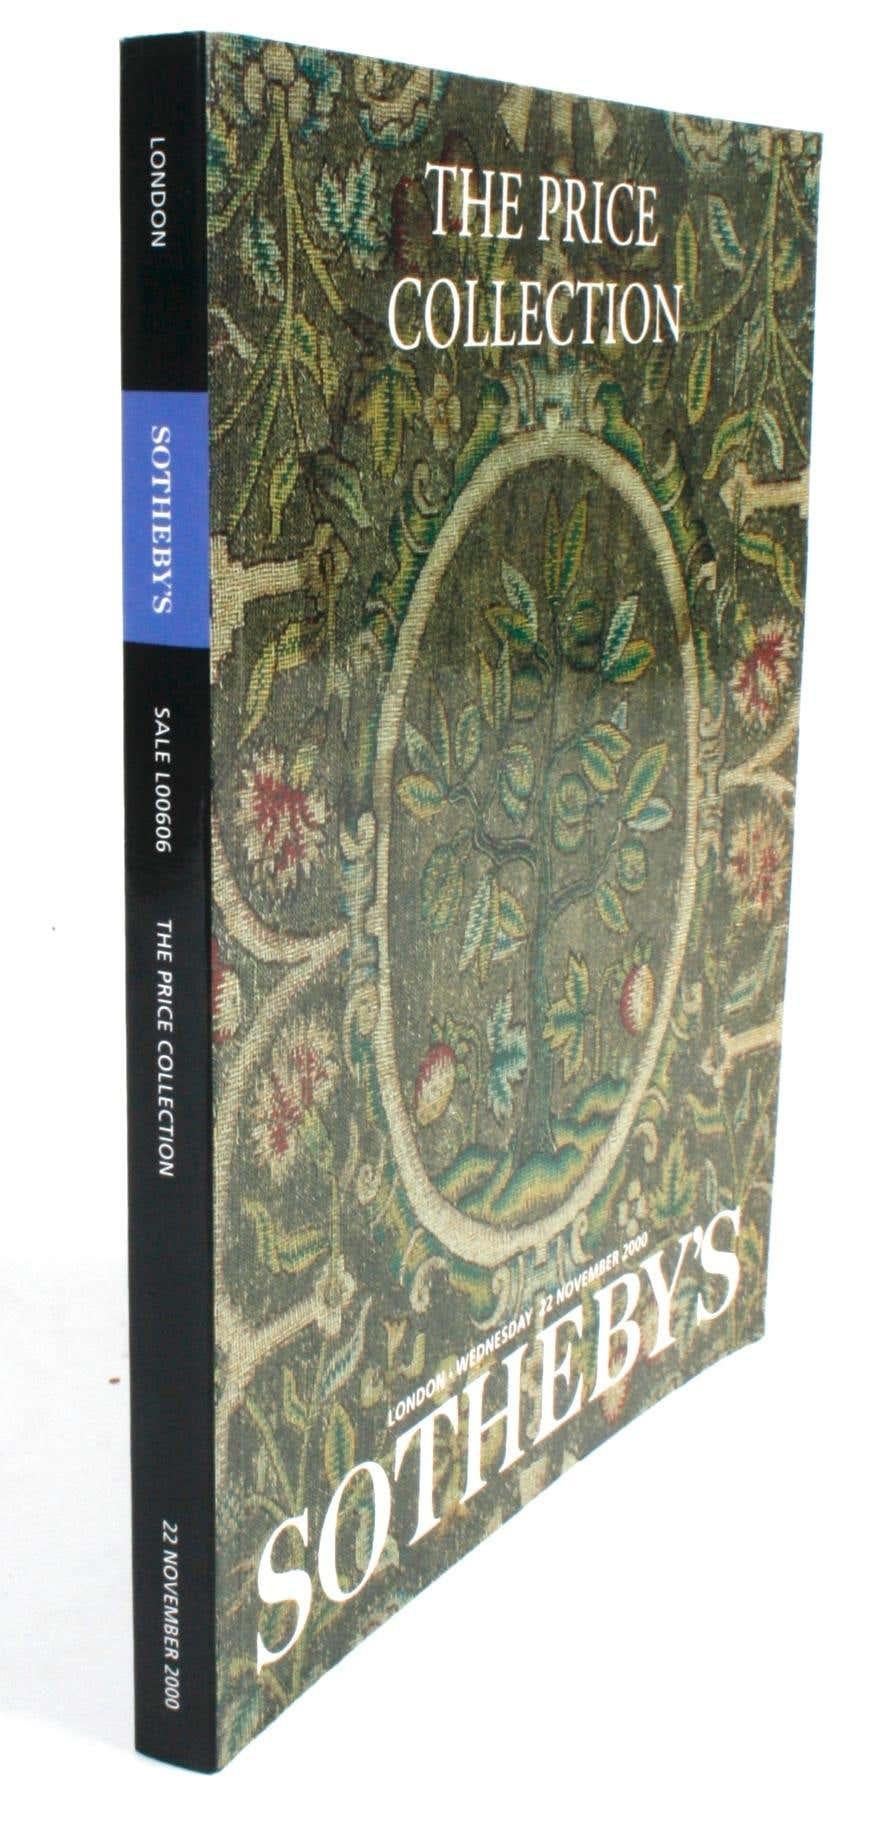 Sotheby's Londres ; The Price Collection. Londres : Sotheby's, 2000. Couverture souple. 260 pages. Catalogue d'une vente aux enchères des biens de feu Sir Henry Price qui s'est tenue à Londres le mercredi 22 novembre 2000. Les meubles et les œuvres